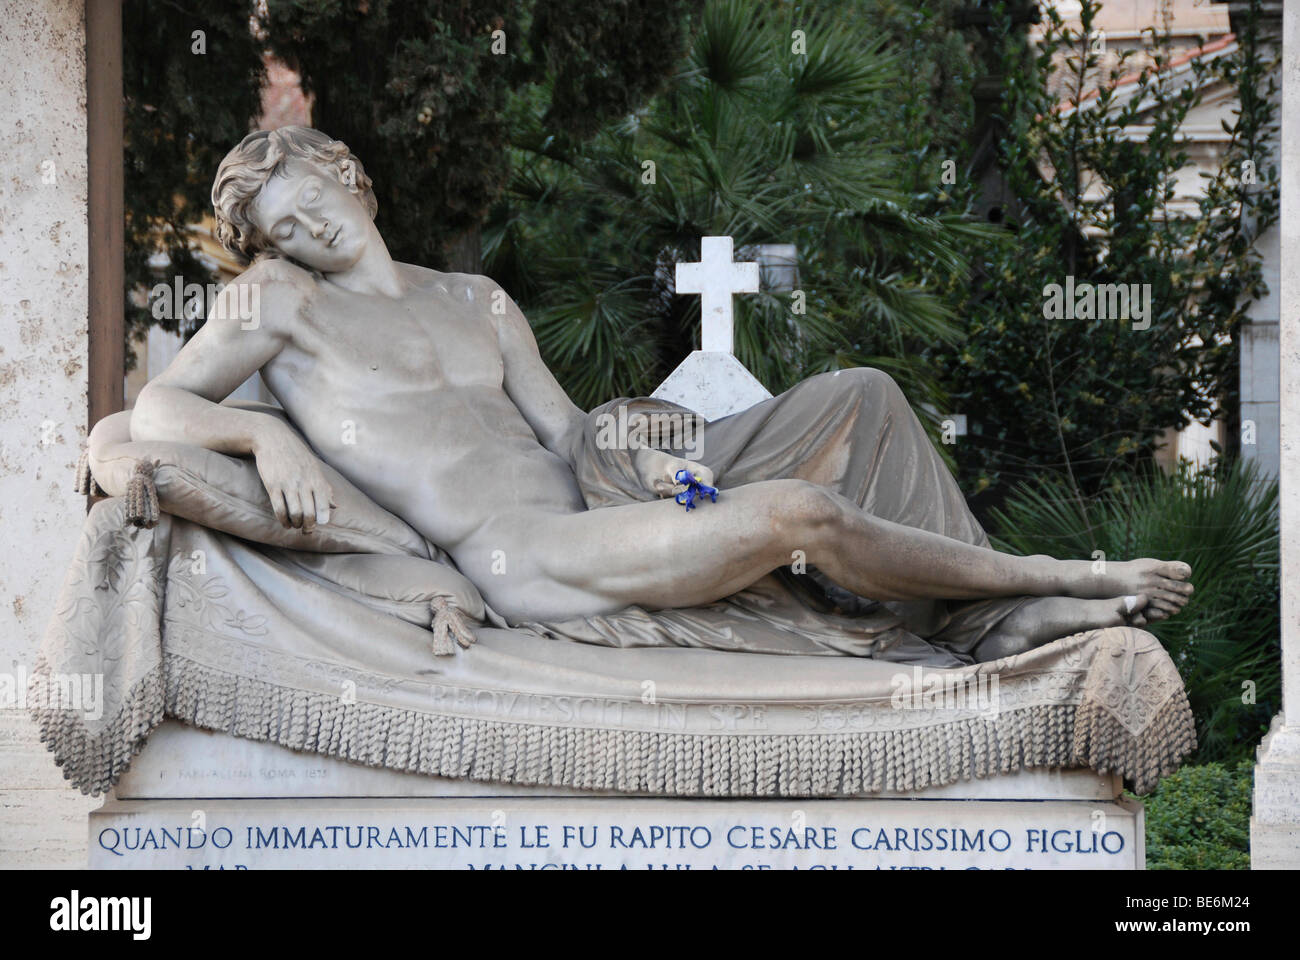 Oggetto contrassegnato per la rimozione definitiva, campo di Verano cimitero, centro storico della città di Roma, Italia, Europa Foto Stock